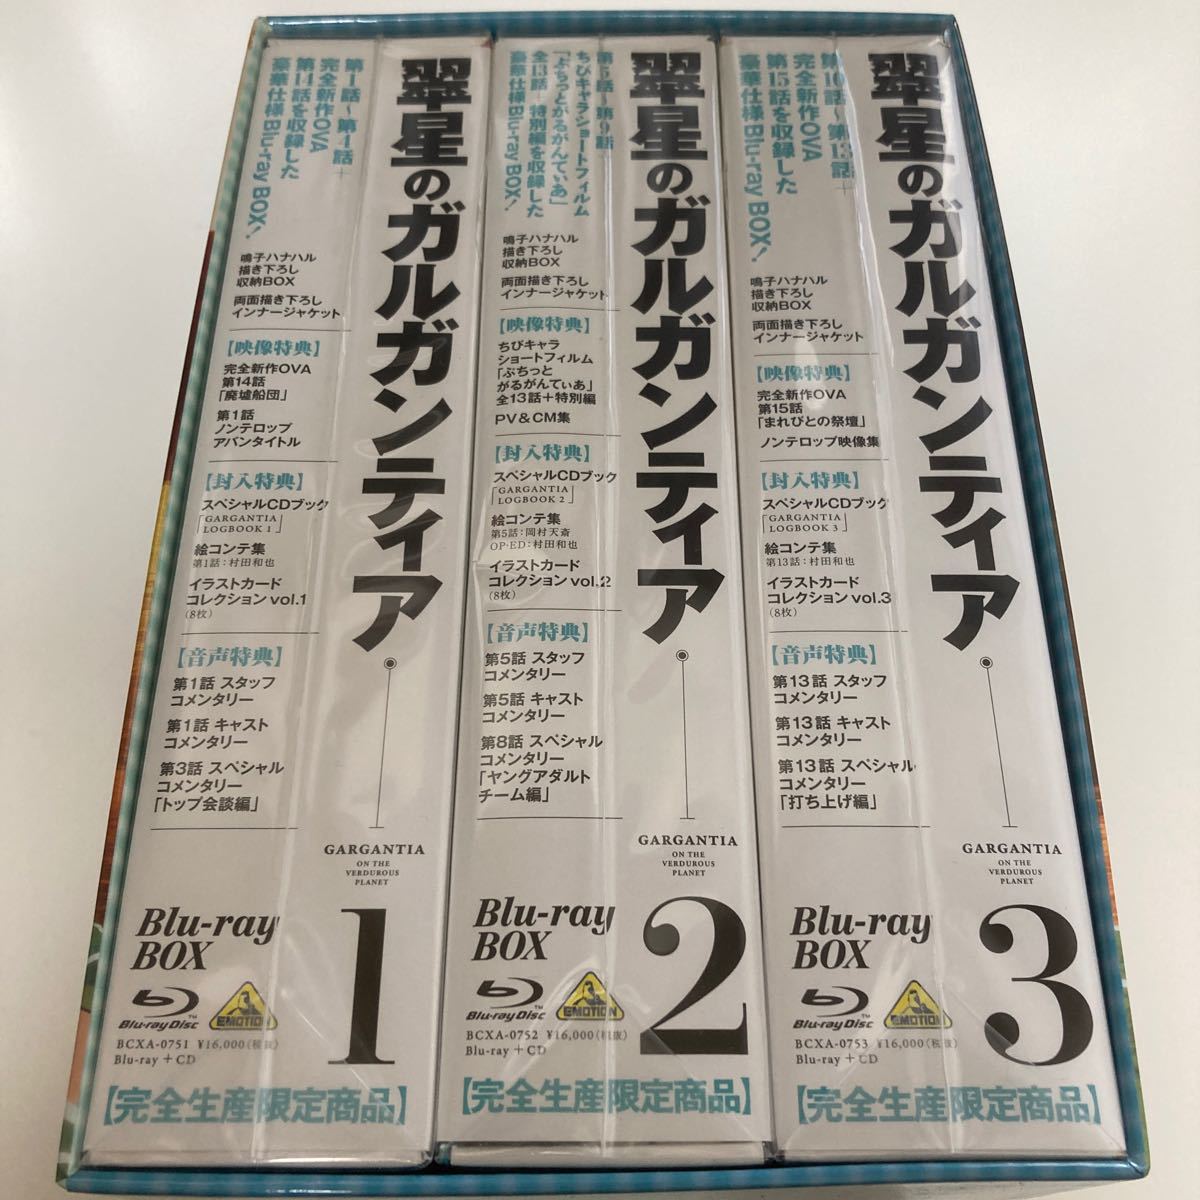 BD 翠星のガルガンティア Blu-ray BOX 1,2,3 完全生産限定 [バンダイビジュアル]